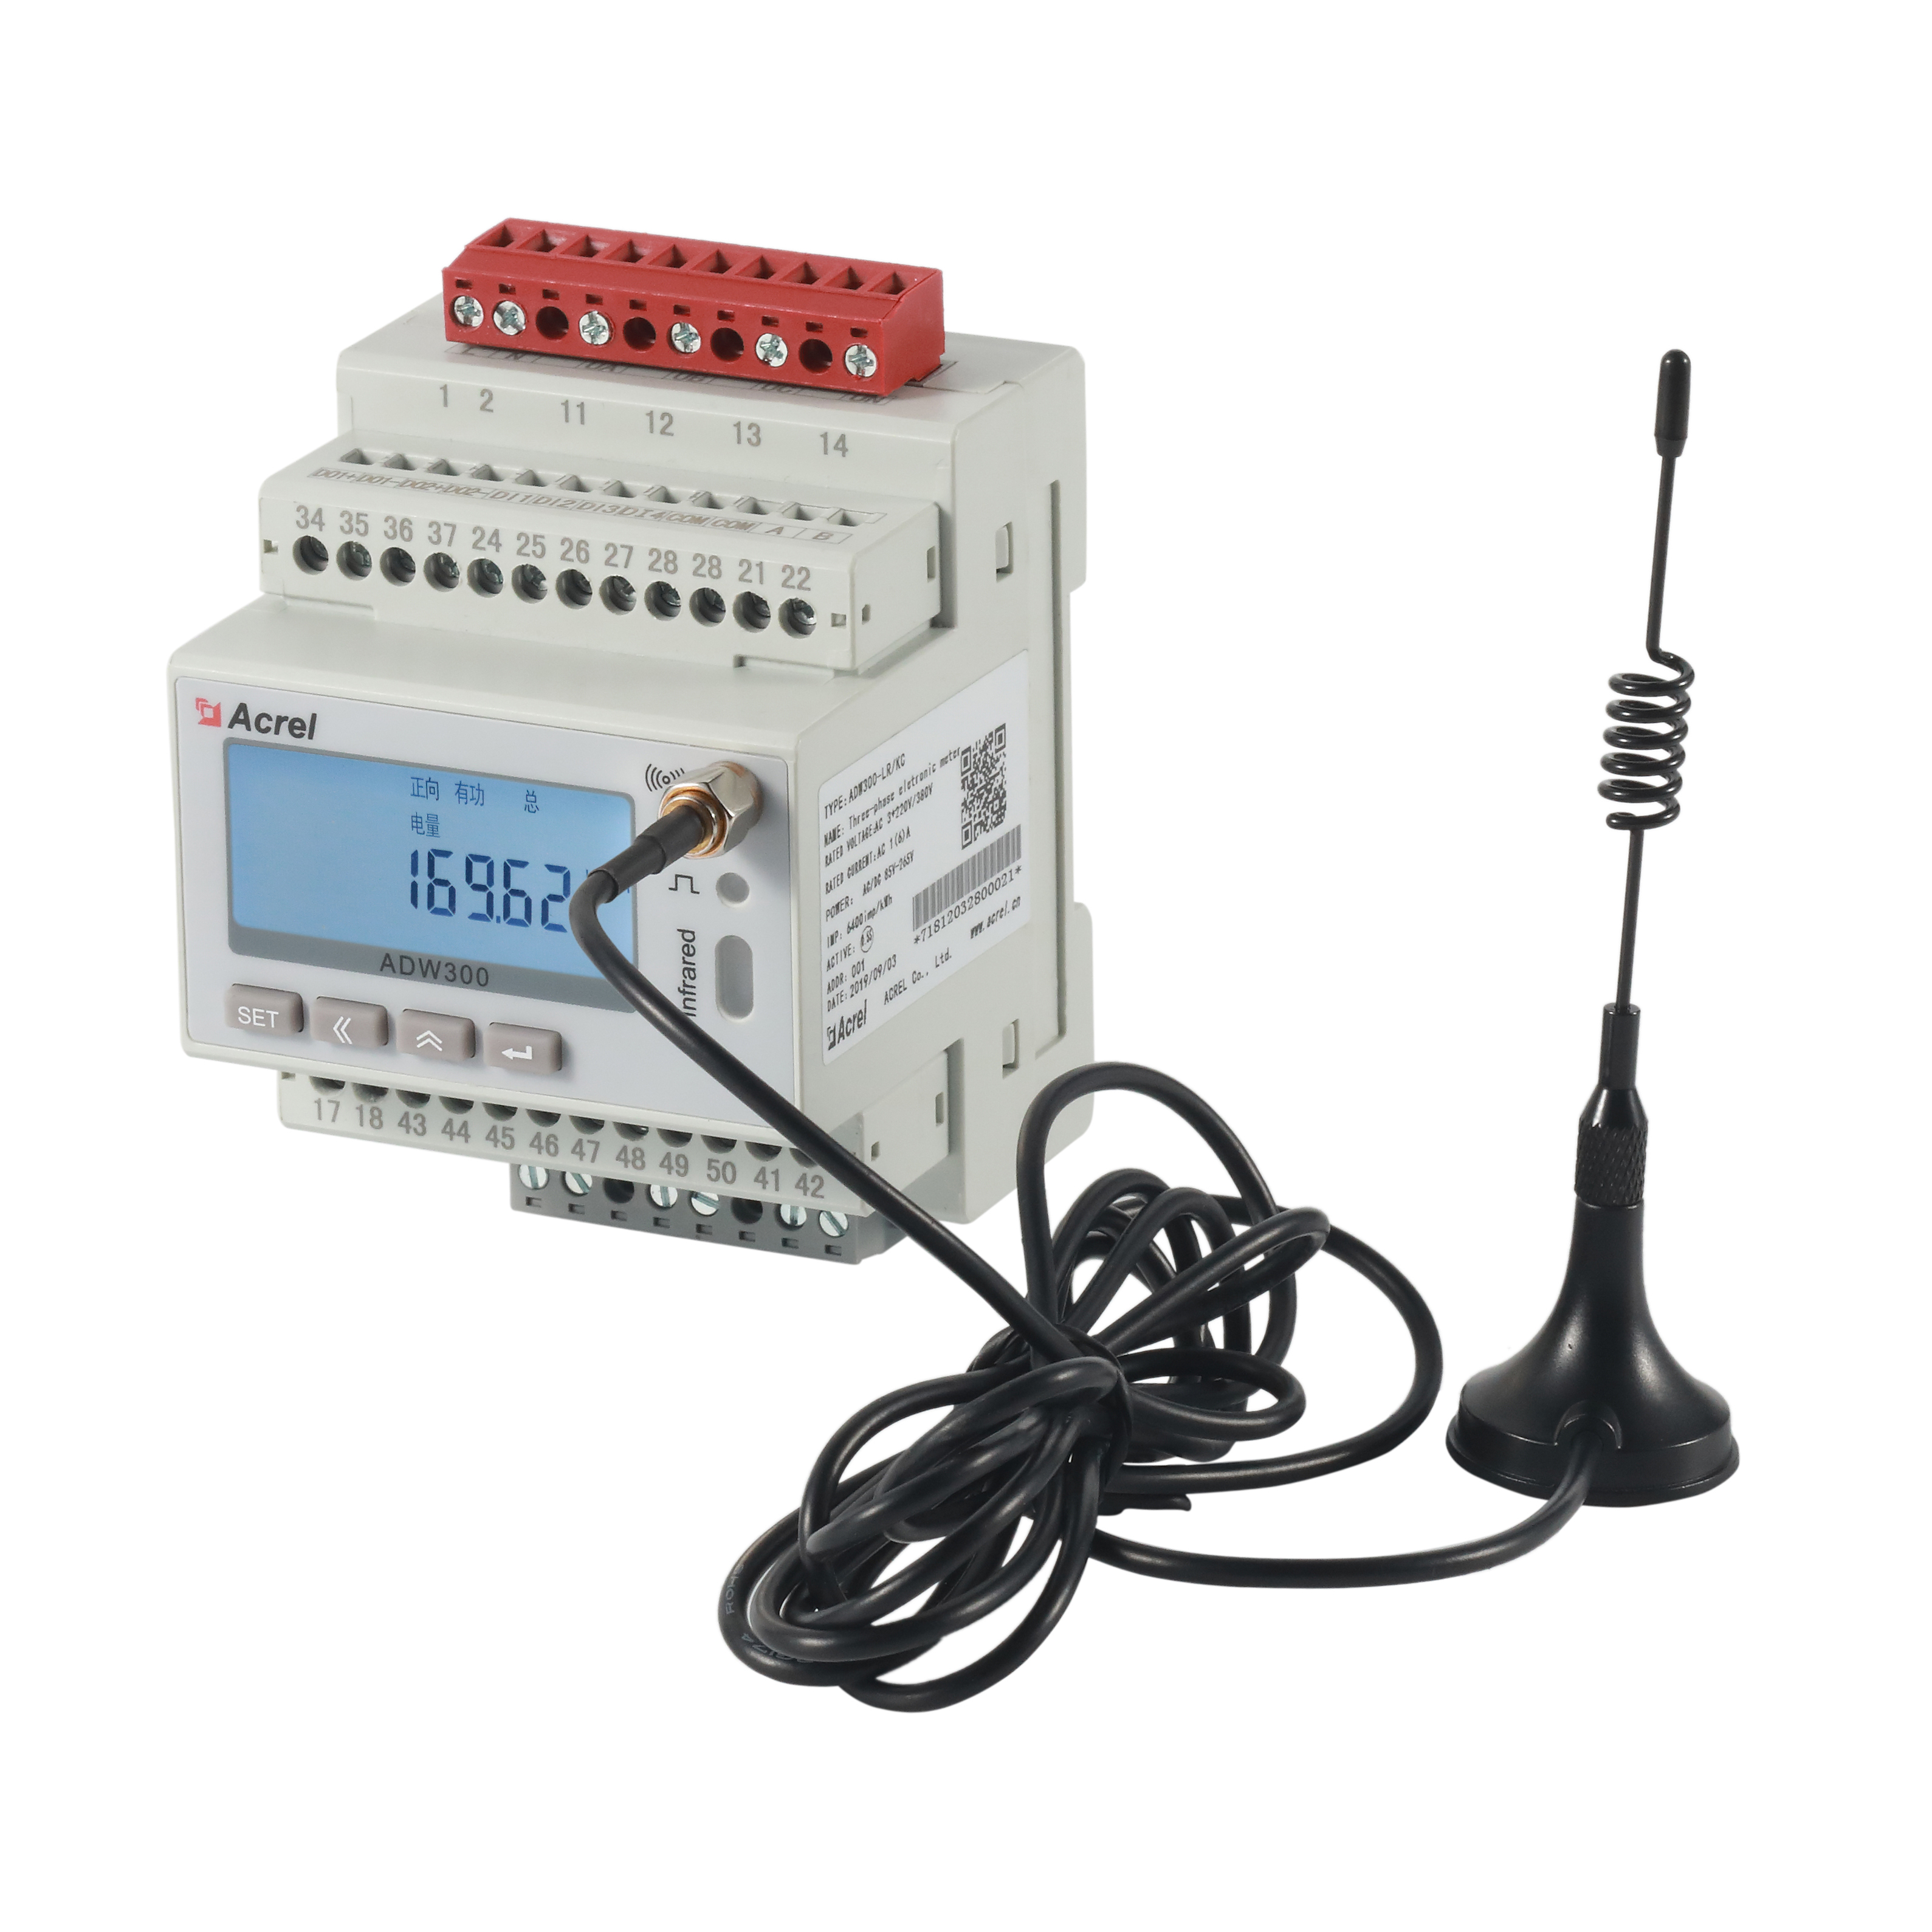 安科瑞ADW300/K无线计量电表EIOT能源物联网平台免调试易部署